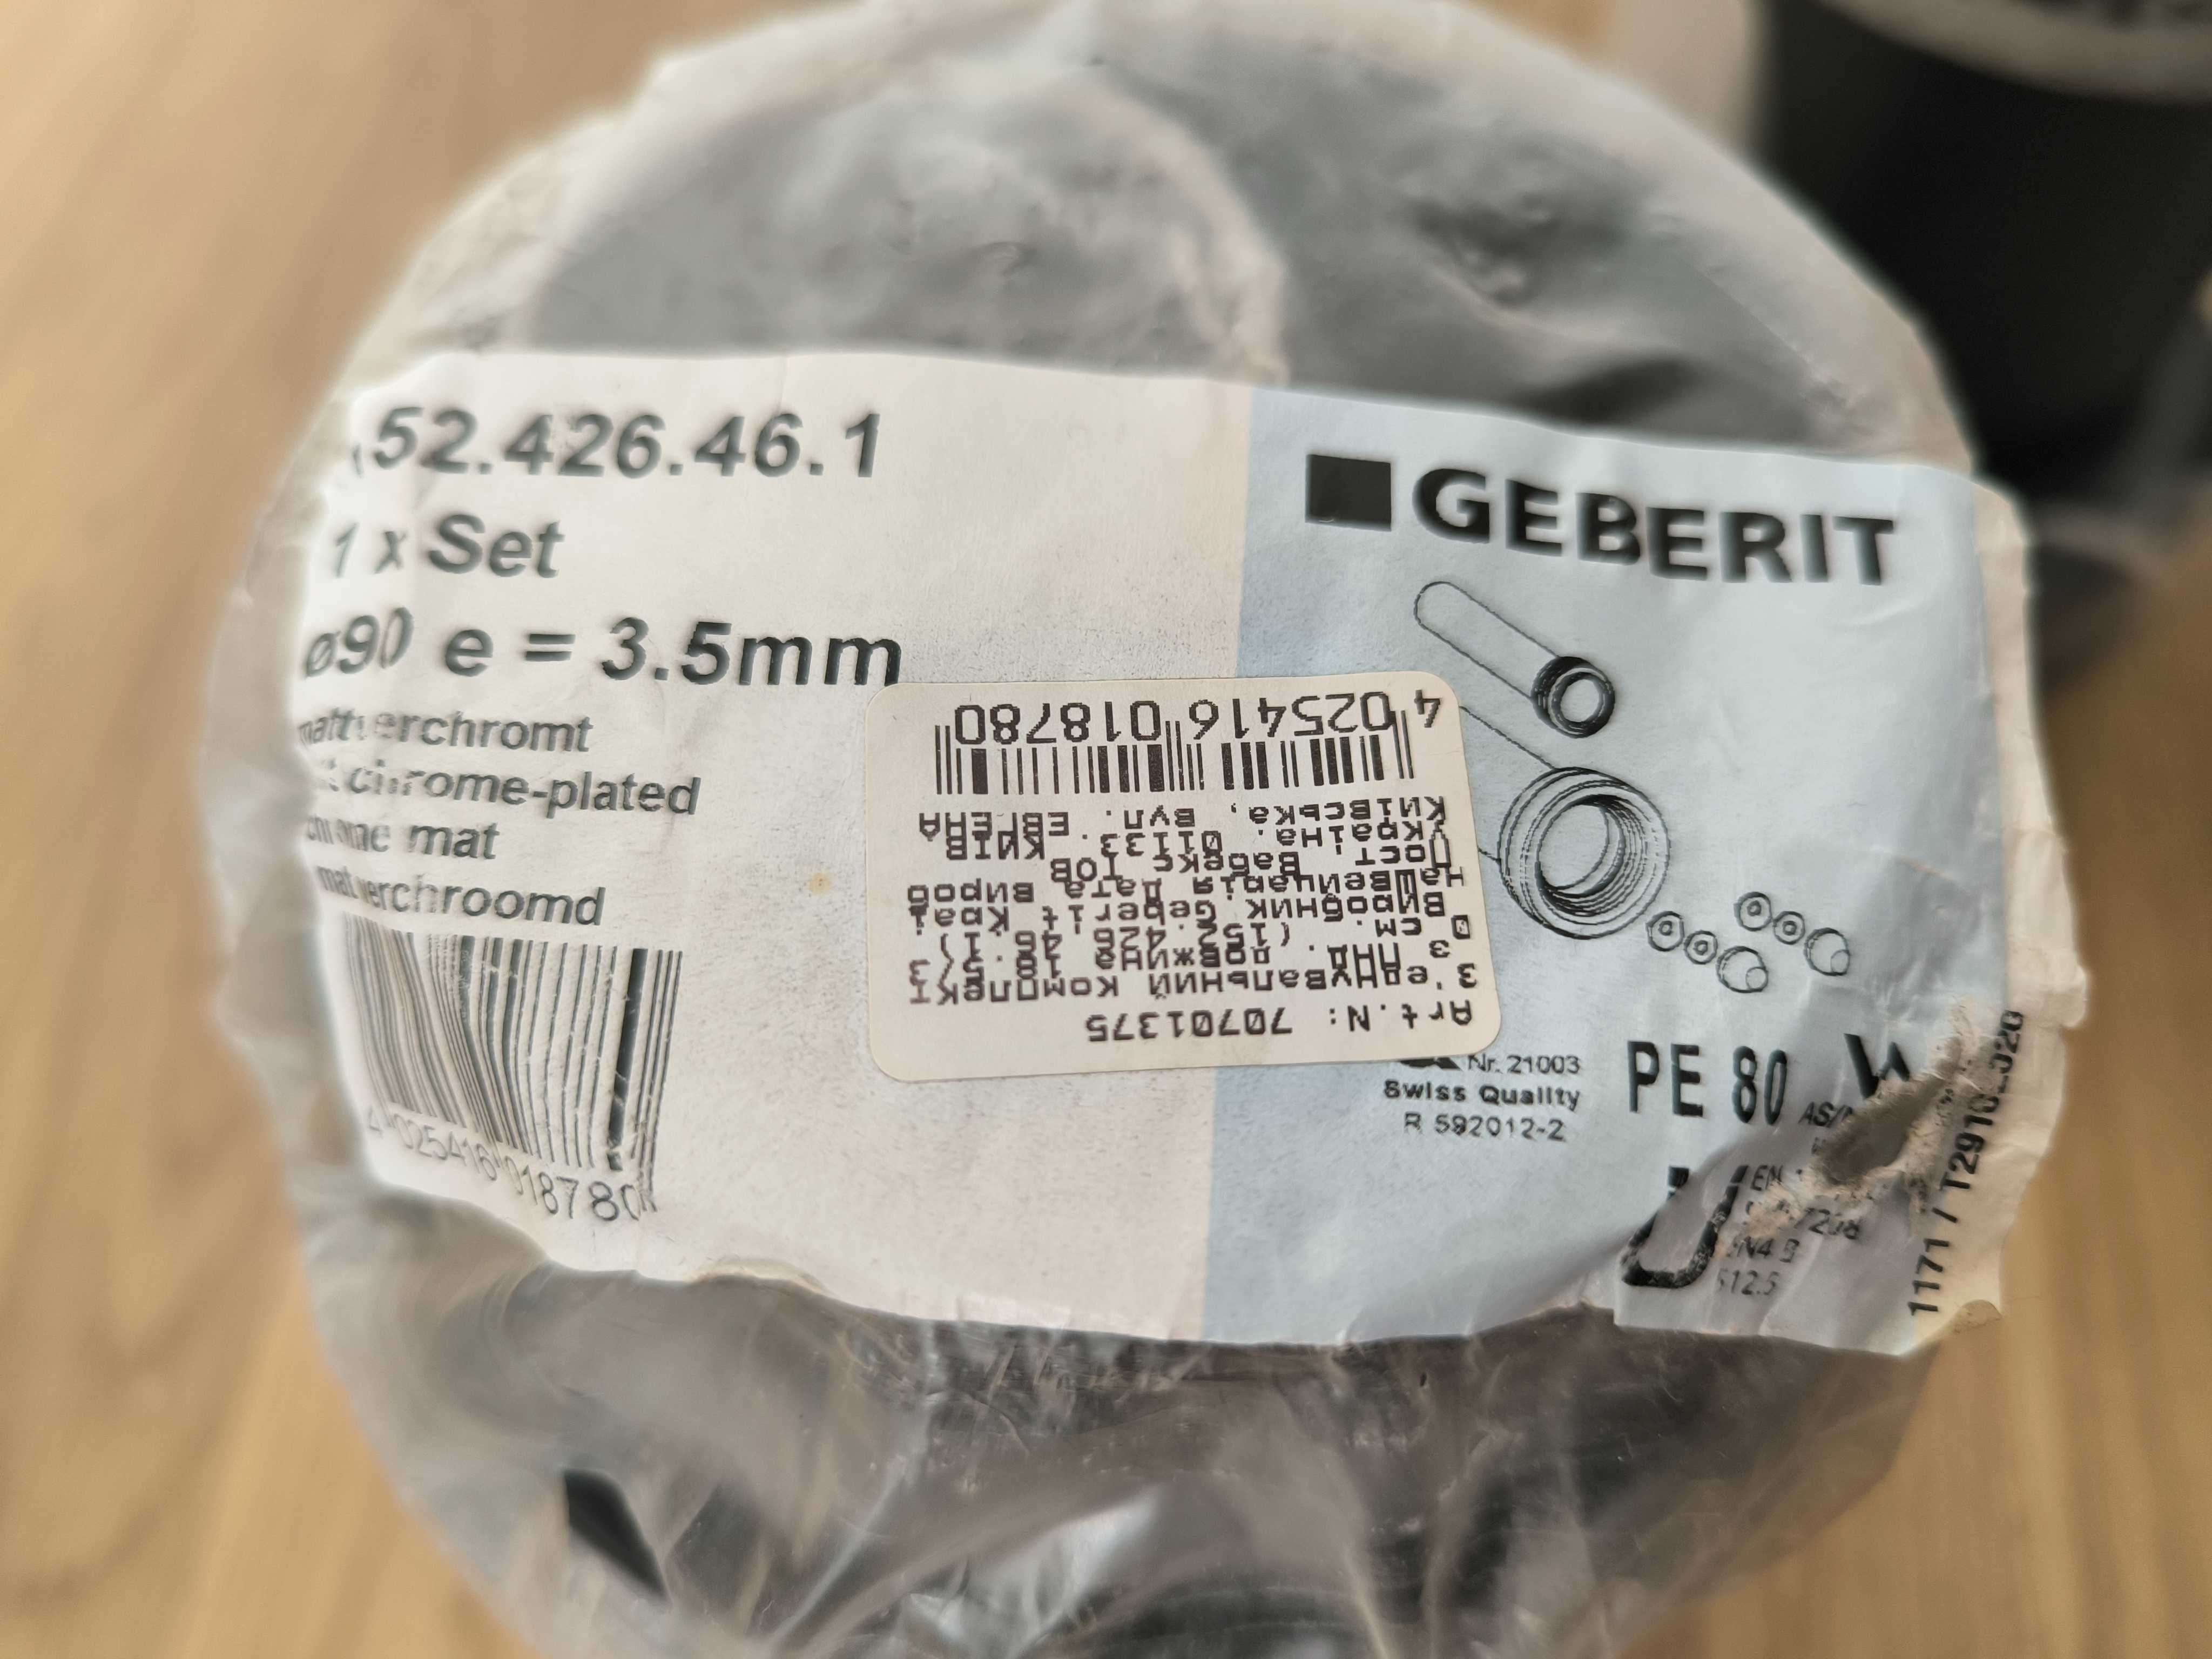 З'єднувальний комплект GEBERIT 152.426.46.1 185 мм